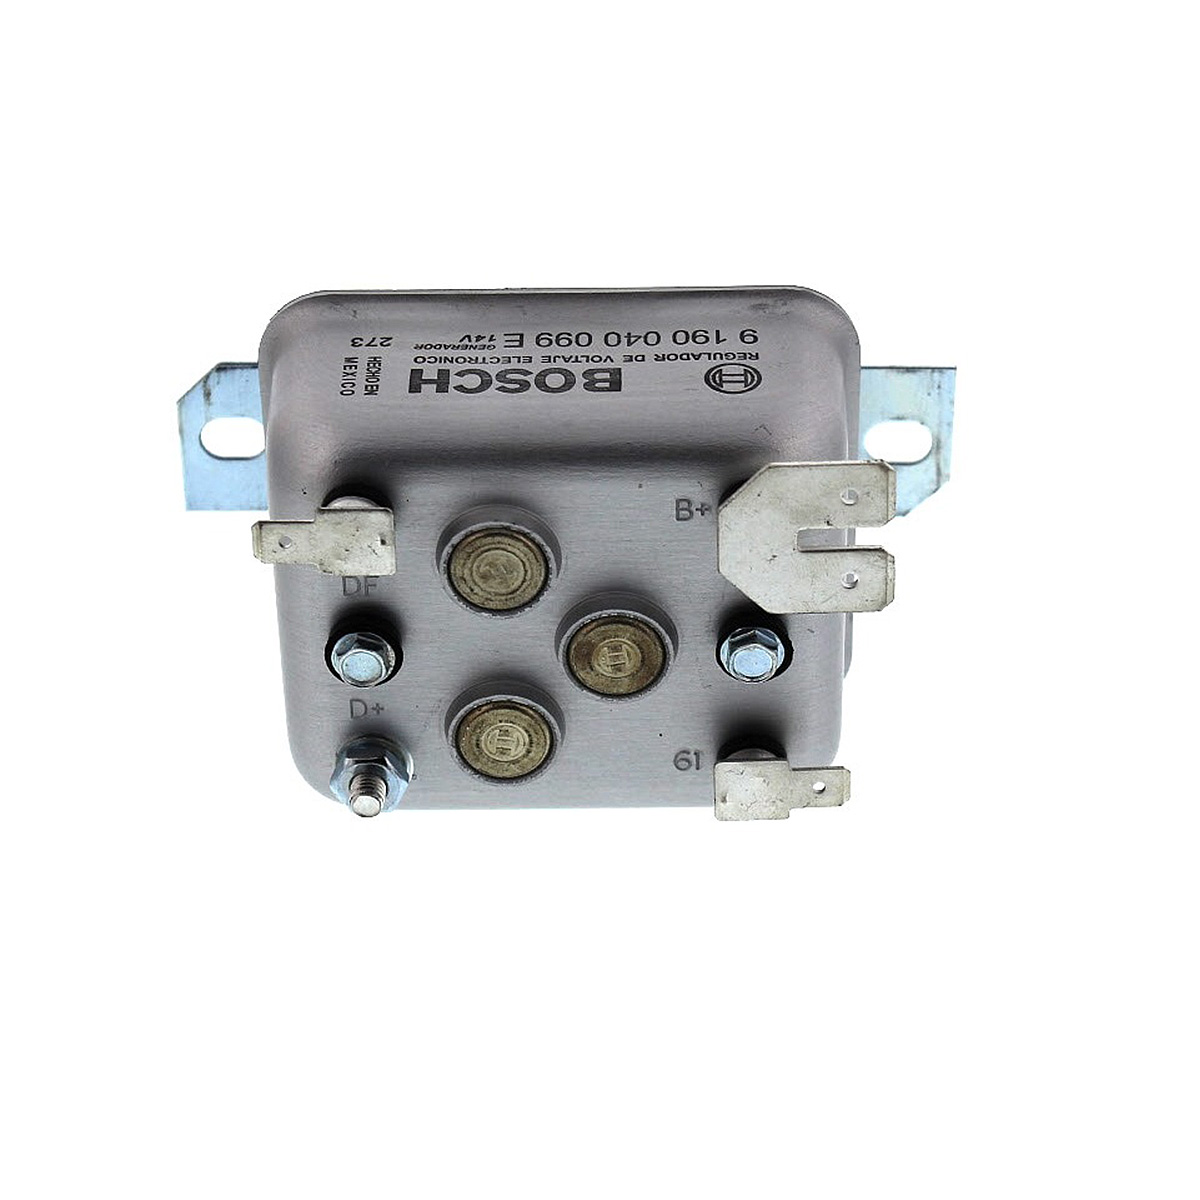 overse kravle Tillid Bosch VW Voltage Regulator - 12 Volt - for GR15 16 & 17 Generators - 30019